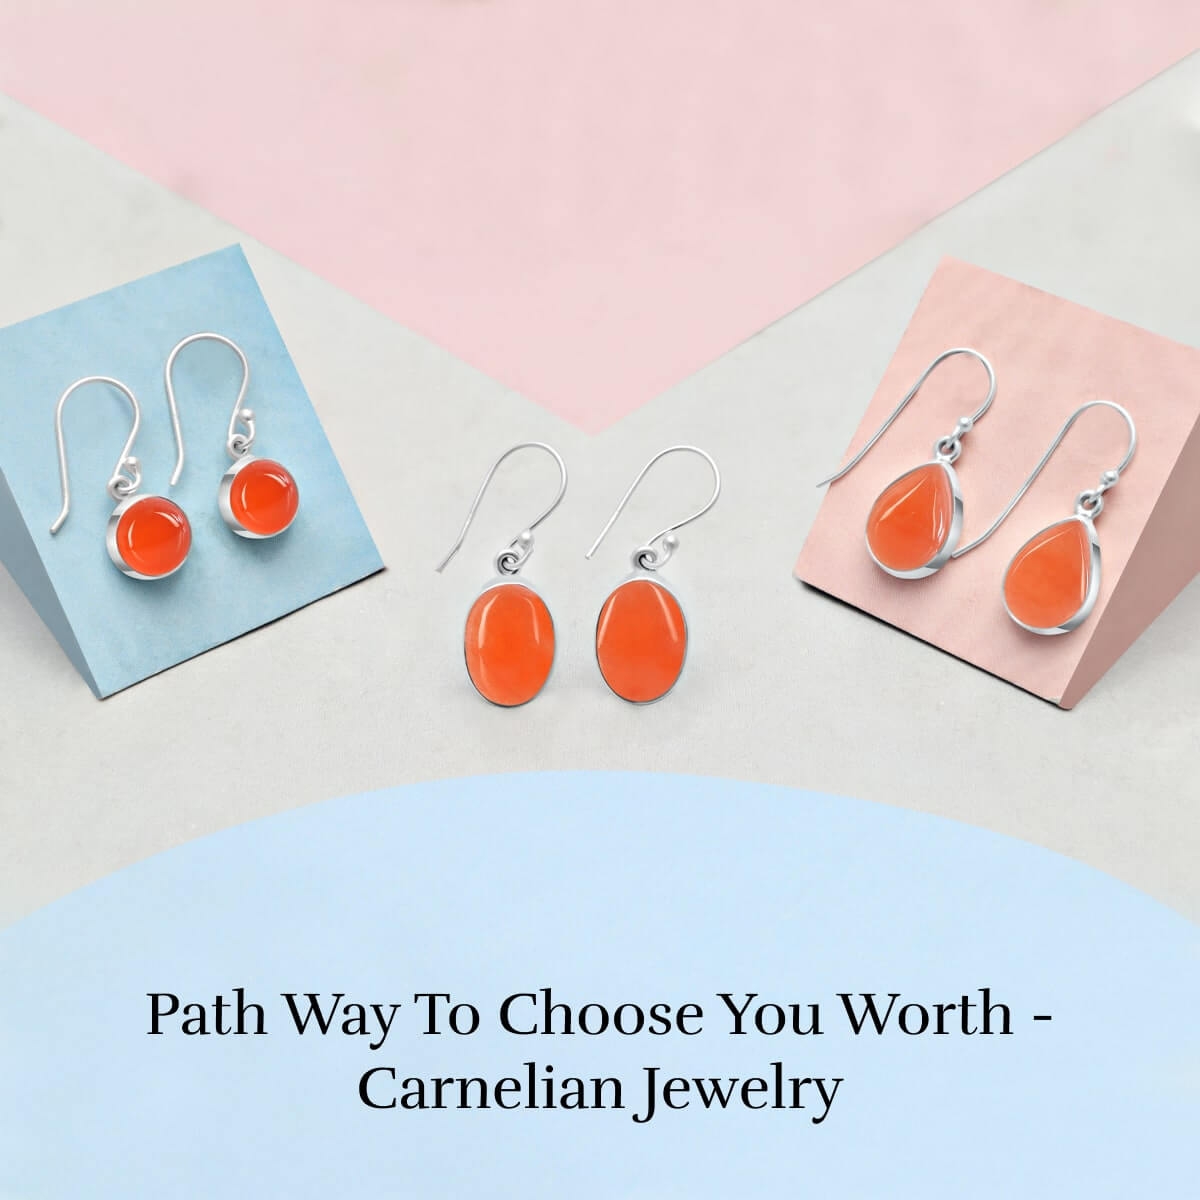 Fiery Carnelian Jewelry - Choose The Right One!